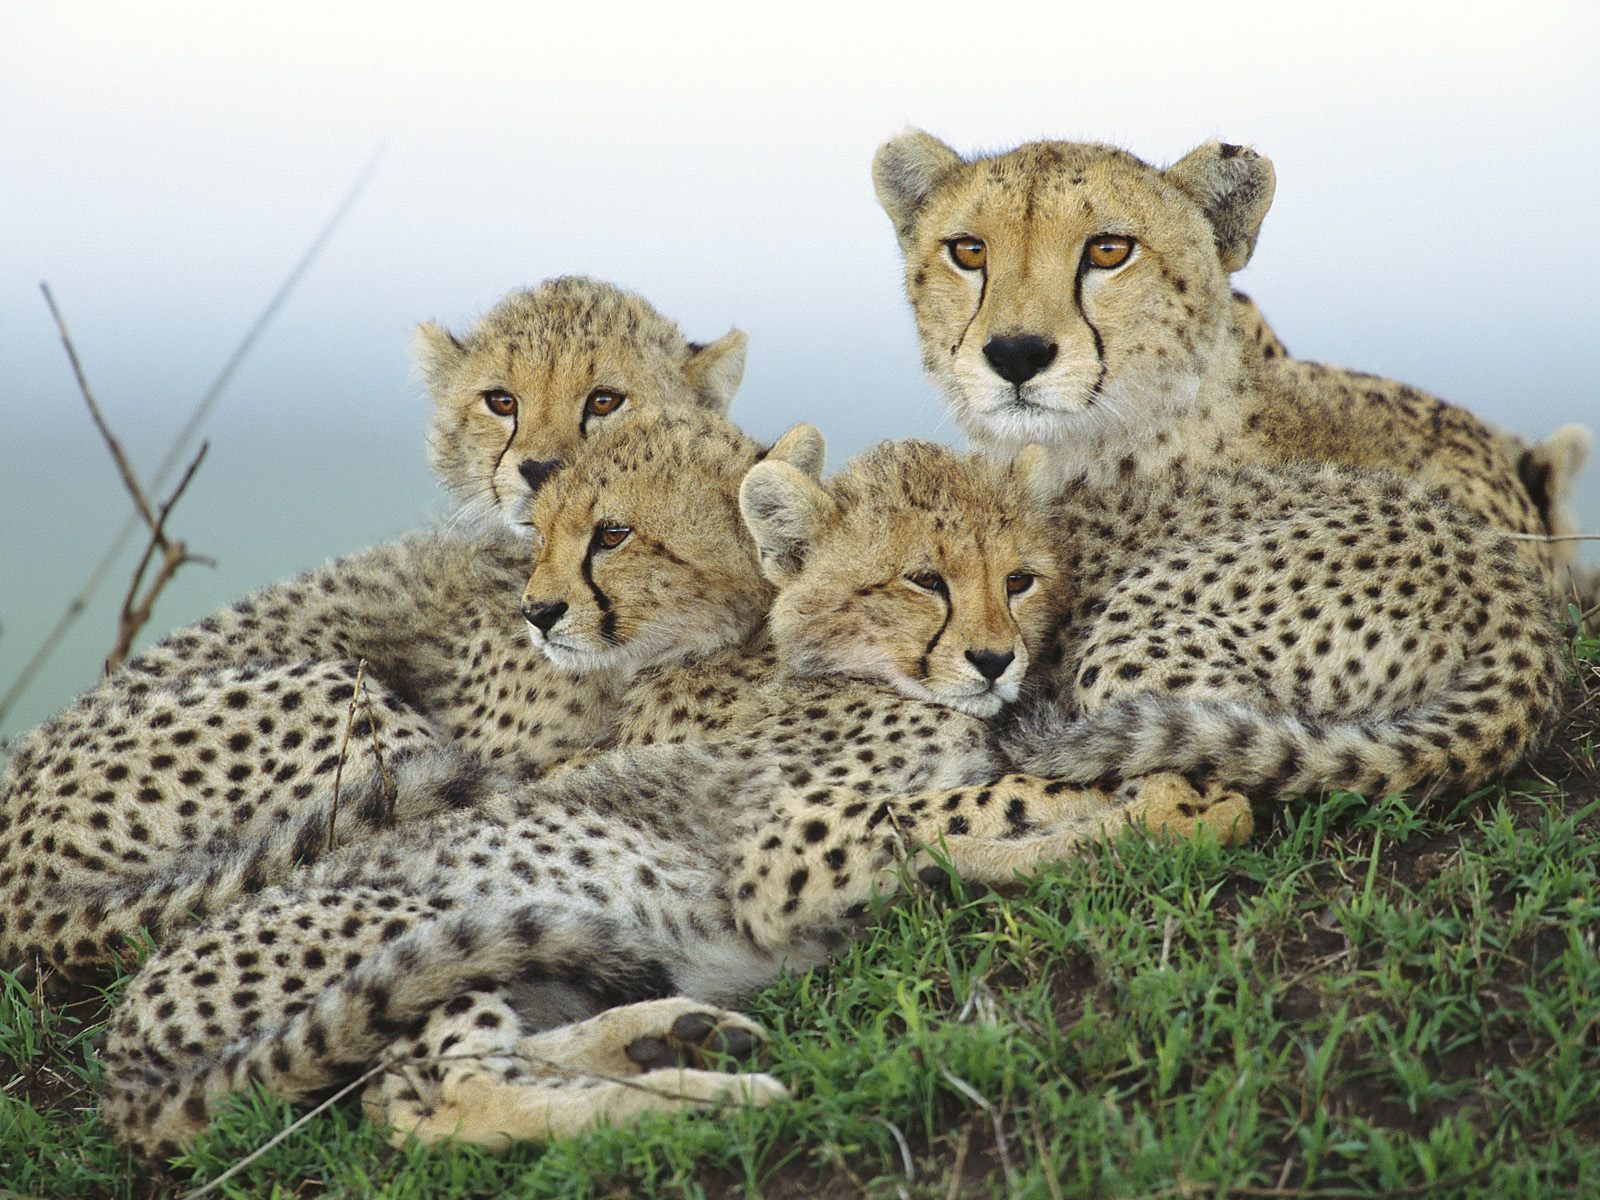 Animal Cubs images Cheetah with Cubs wallpaper photos 29105913